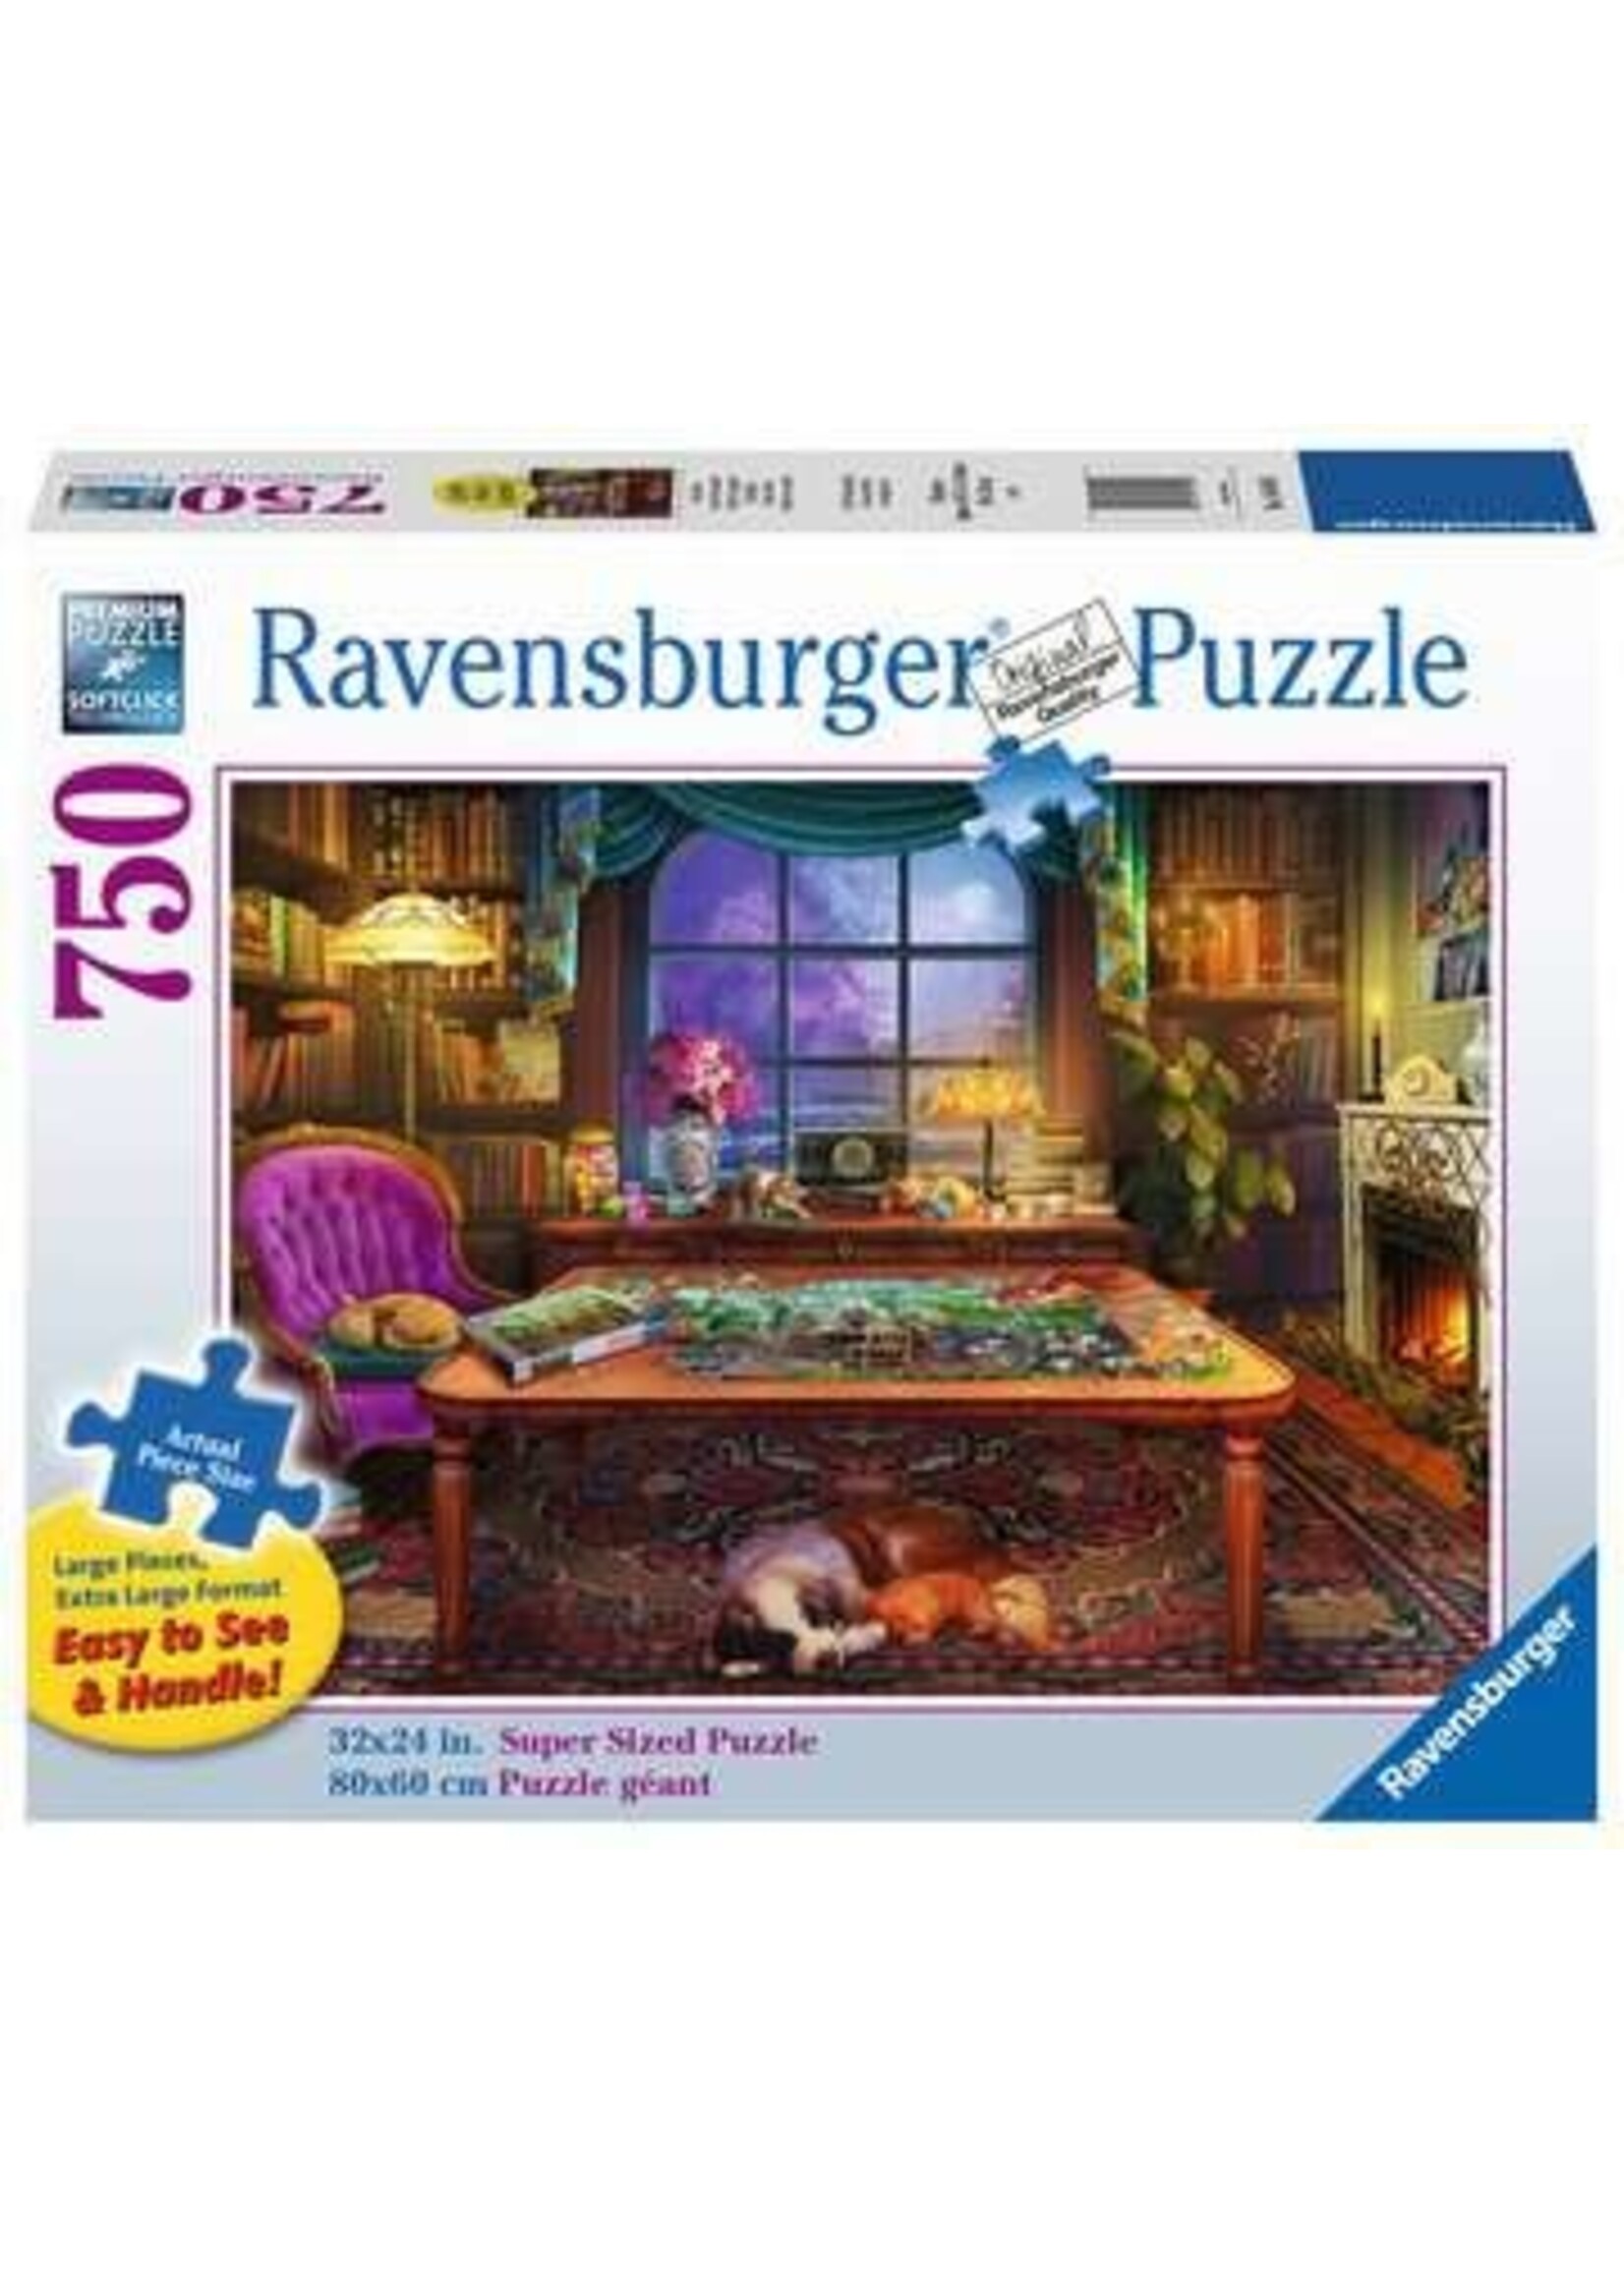 Ravensburger "Puzzler's Place" 750 Piece Puzzle